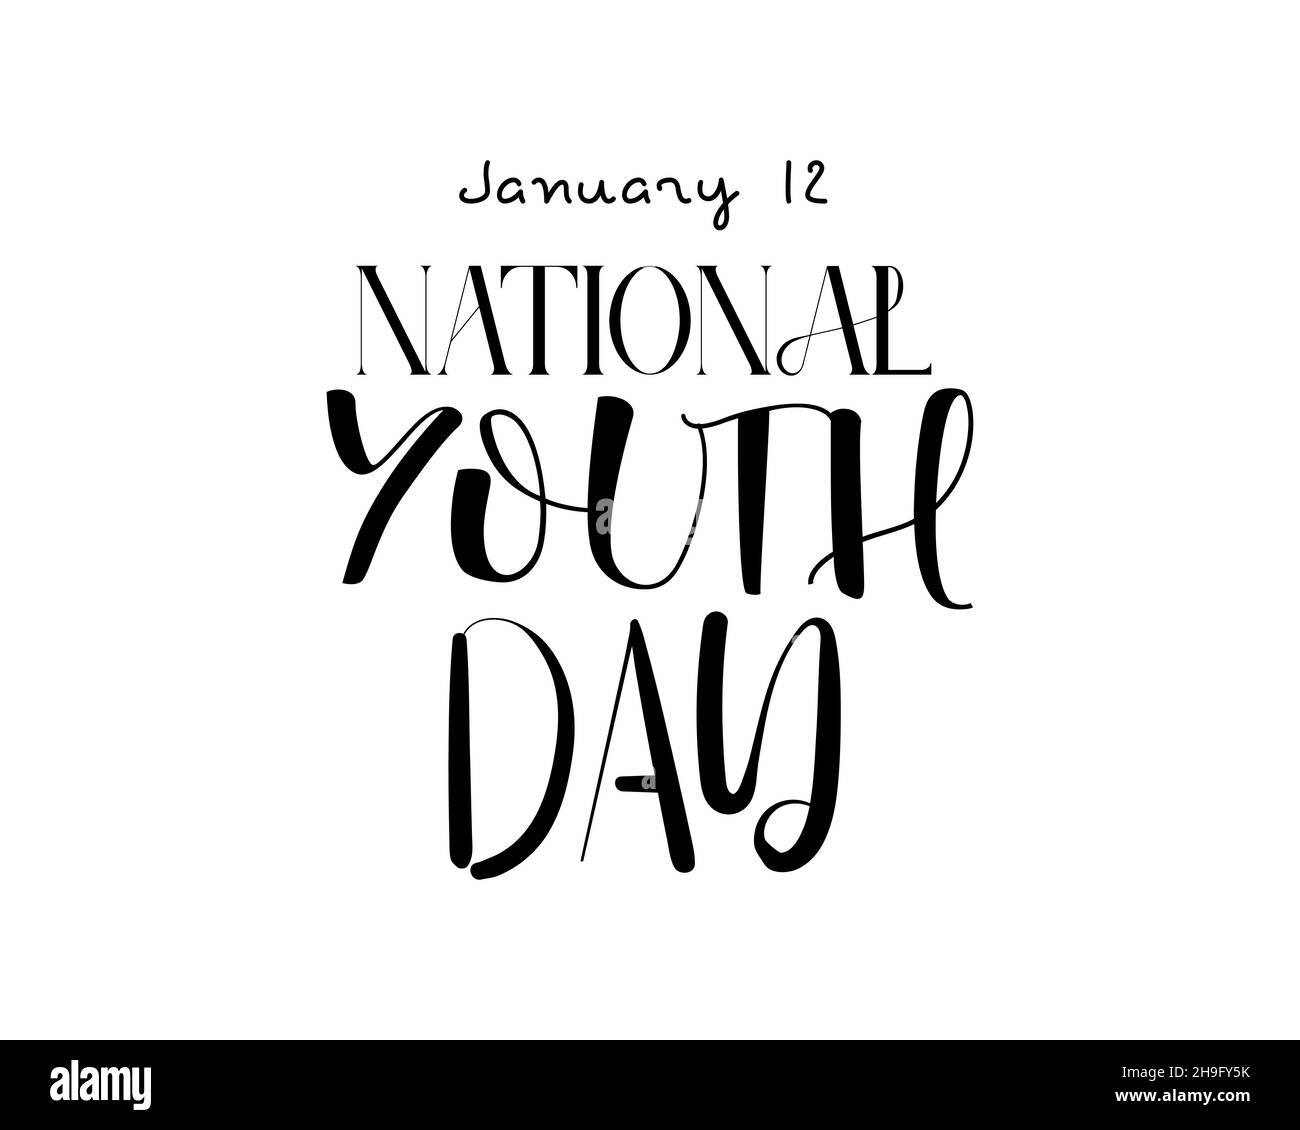 12 janvier - Journée nationale de la jeunesse. Dessin vectoriel de lettrage à la main pour la Journée nationale de la jeunesse.Illustration de calligraphie pour bannière, affiche, chemise, carte. Illustration de Vecteur